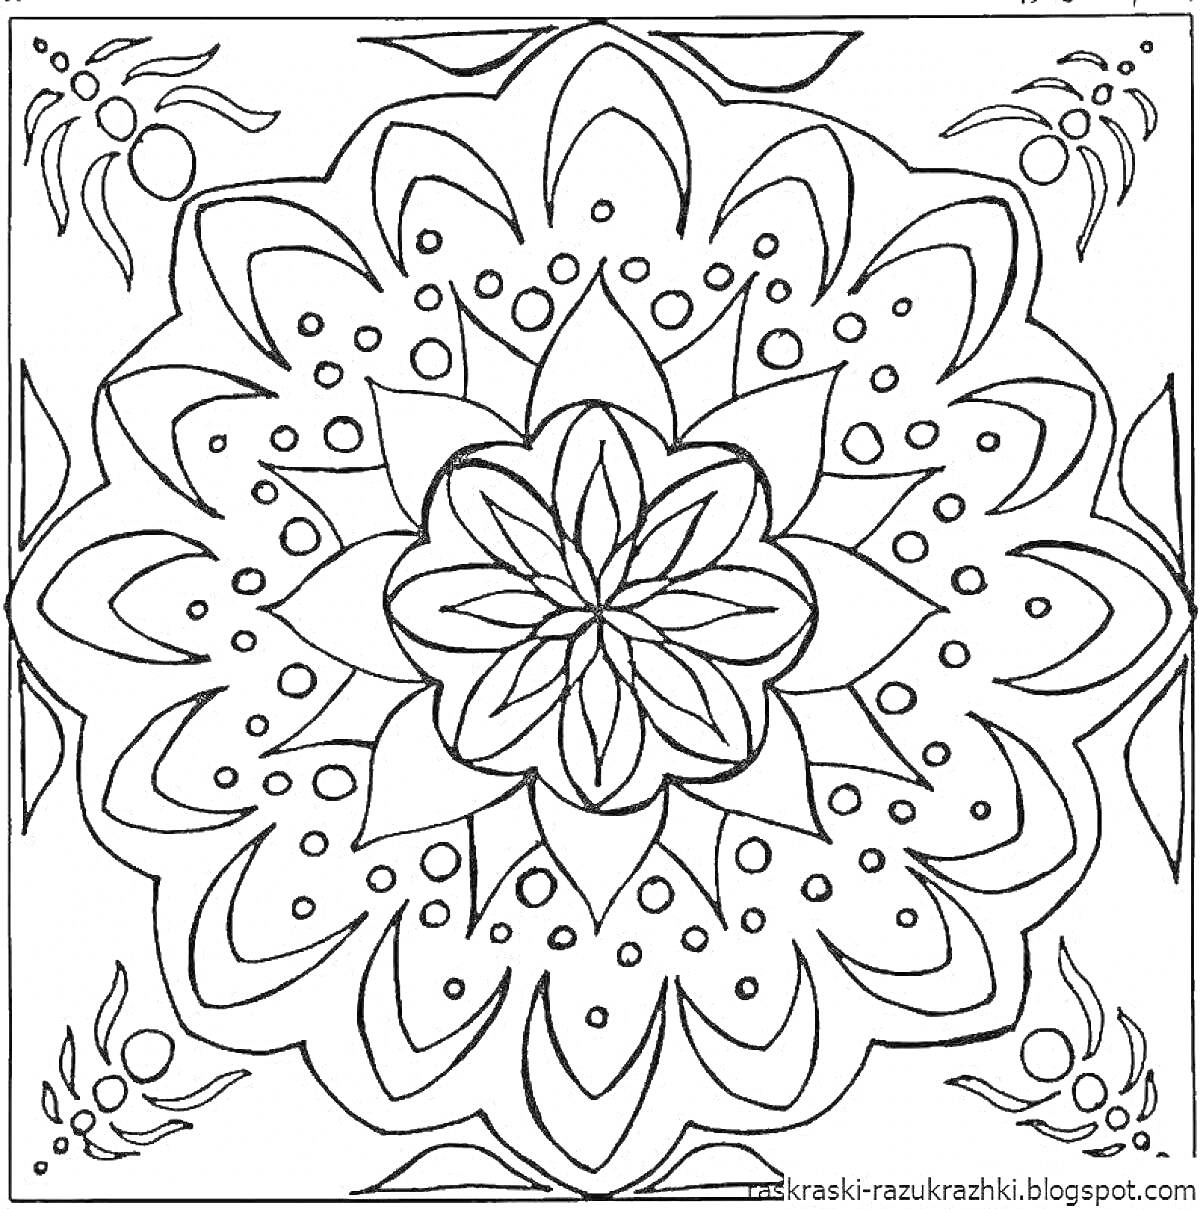 Раскраска павлопосадский платок с цветочным узором, крупный центральный цветок, лепестки с точечным орнаментом, угловые цветочные элементы